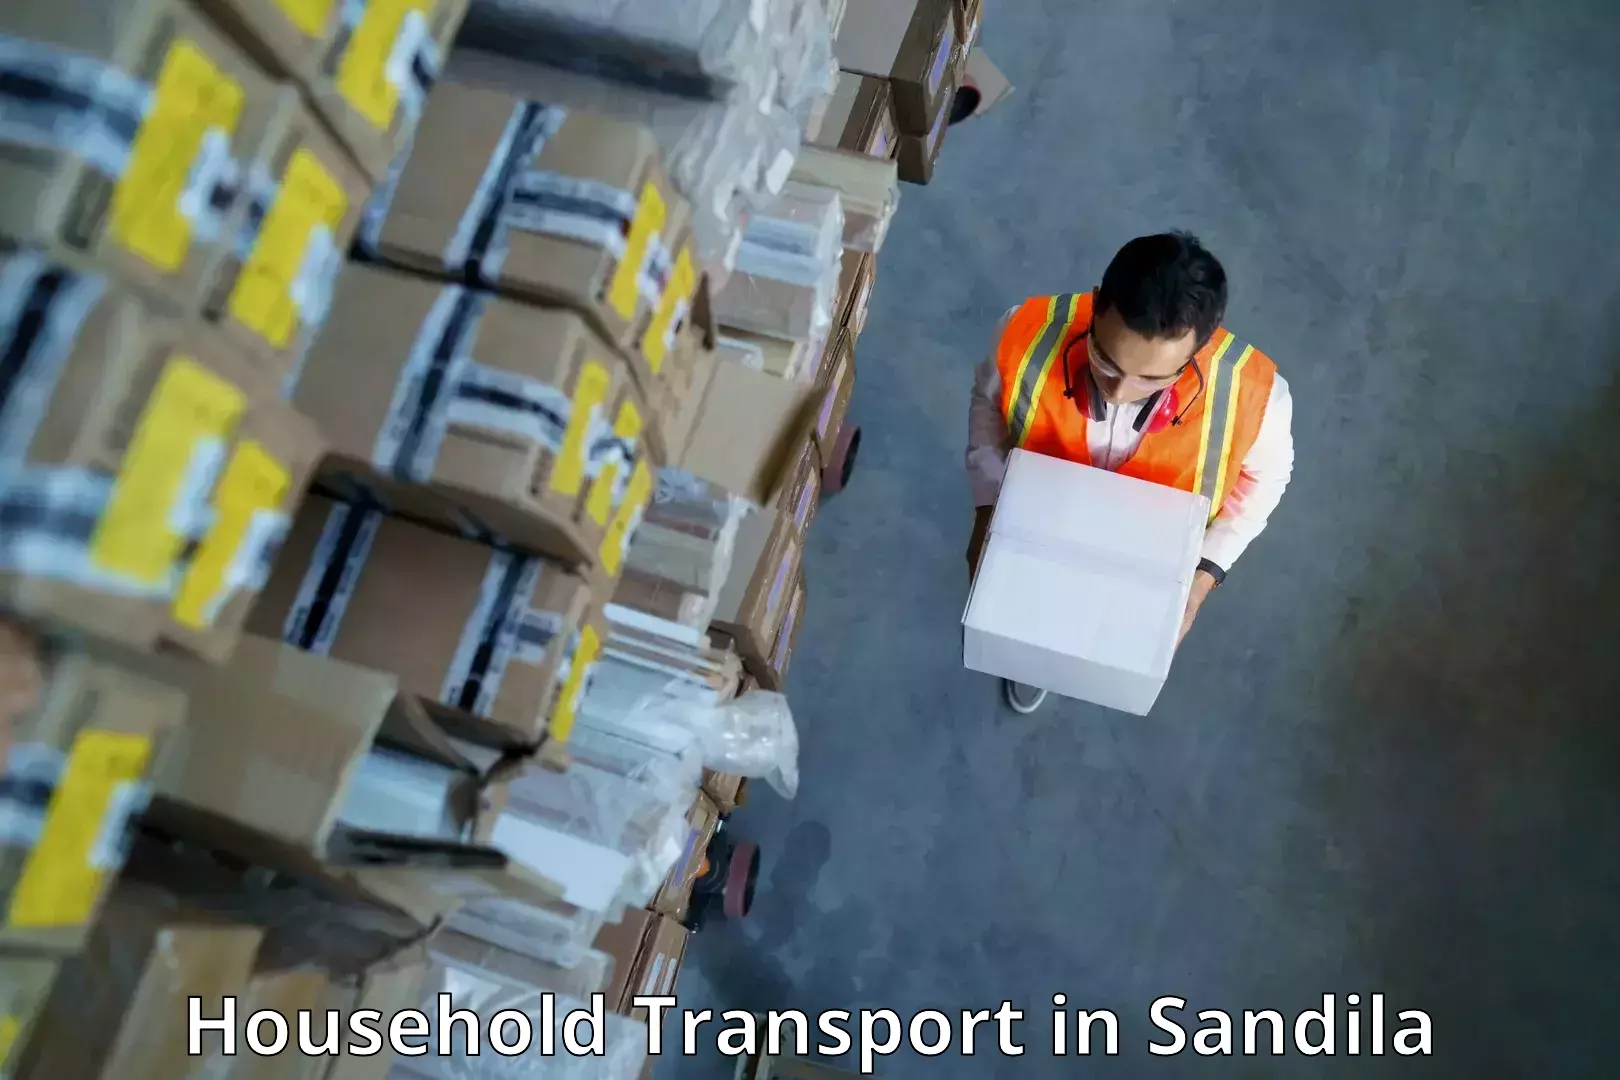 Household transport solutions in Sandila